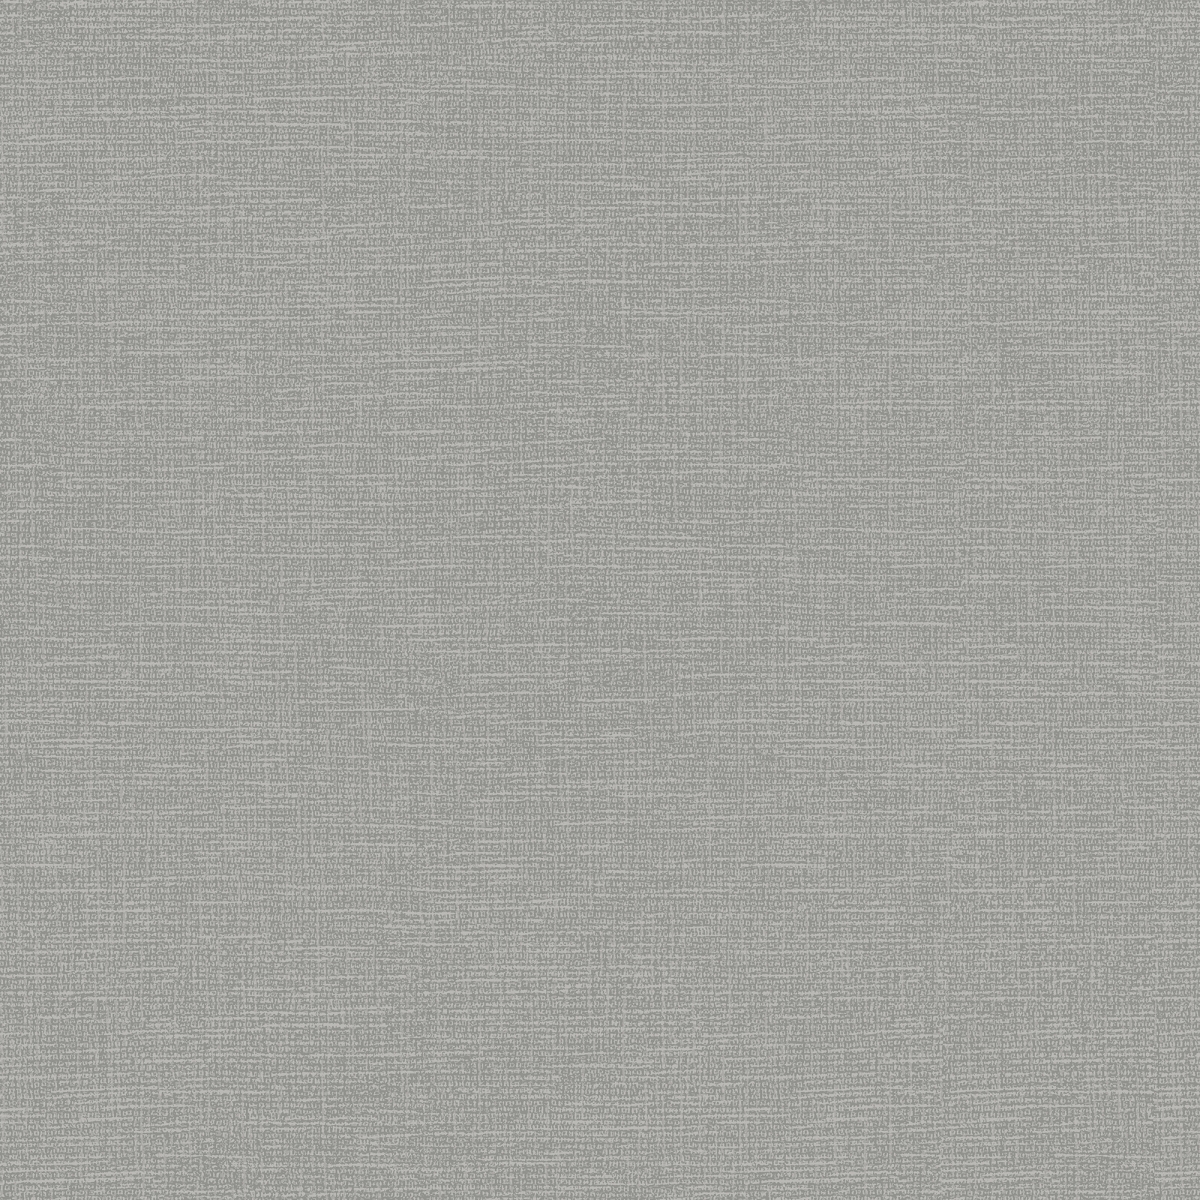 904209 Canvas Non-woven Wallpaper, Grey